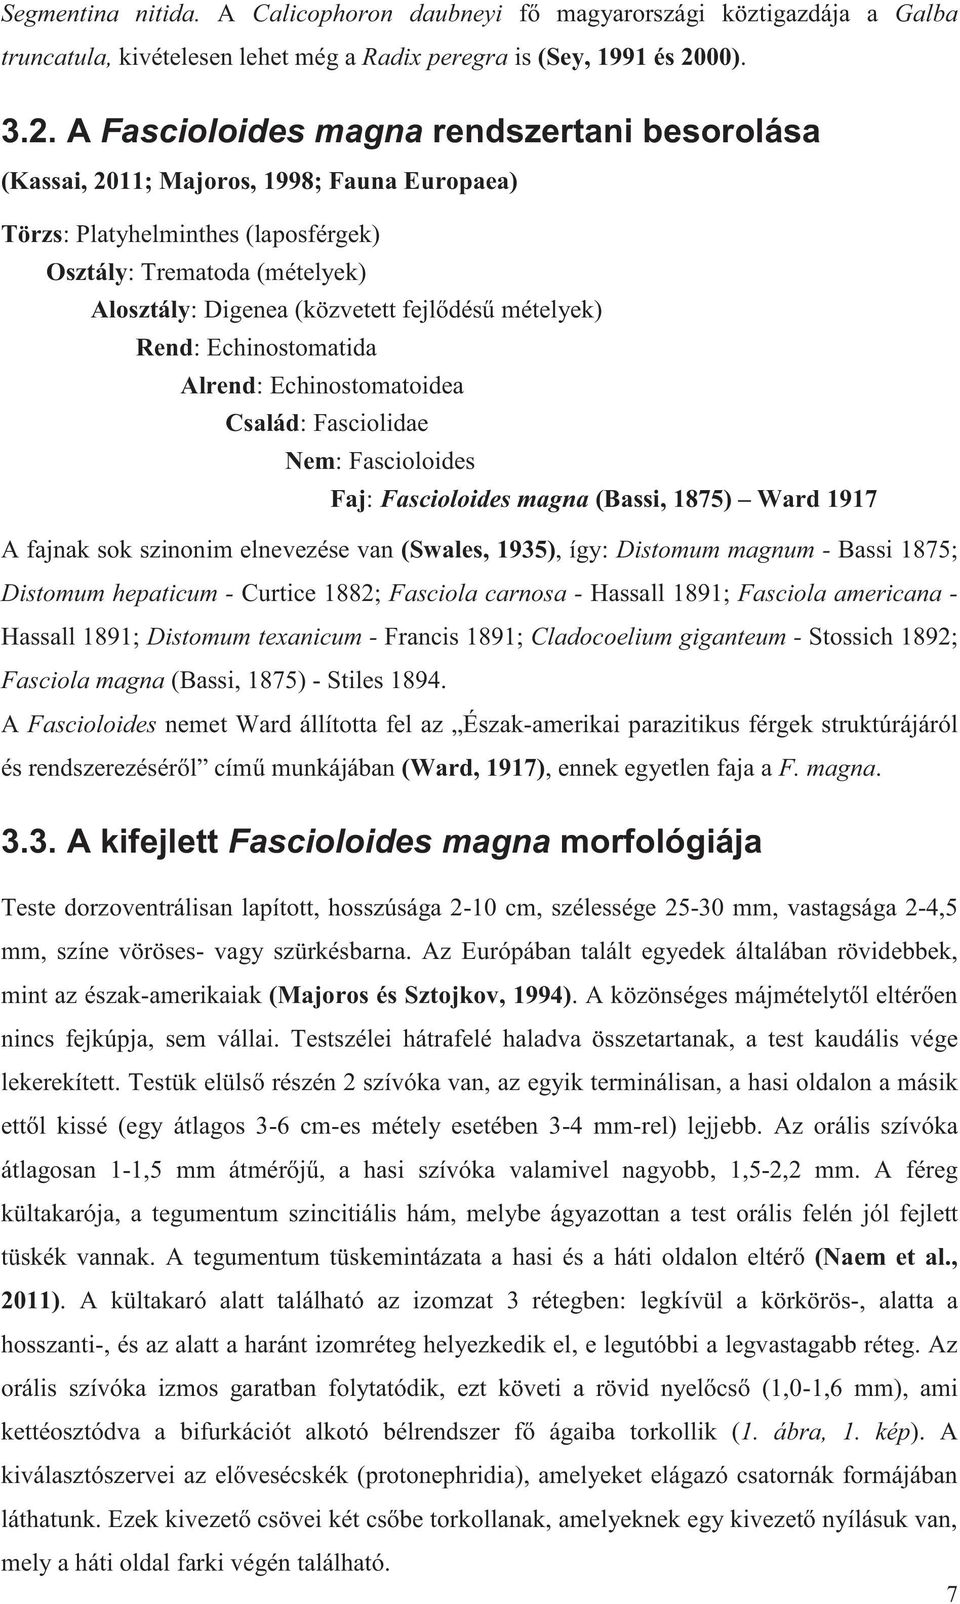 A Fascioloides magna rendszertani besorolása (Kassai, 2011; Majoros, 1998; Fauna Europaea) Törzs: Platyhelminthes (laposférgek) Osztály: Trematoda (mételyek) Alosztály: Digenea (közvetett fejlődésű